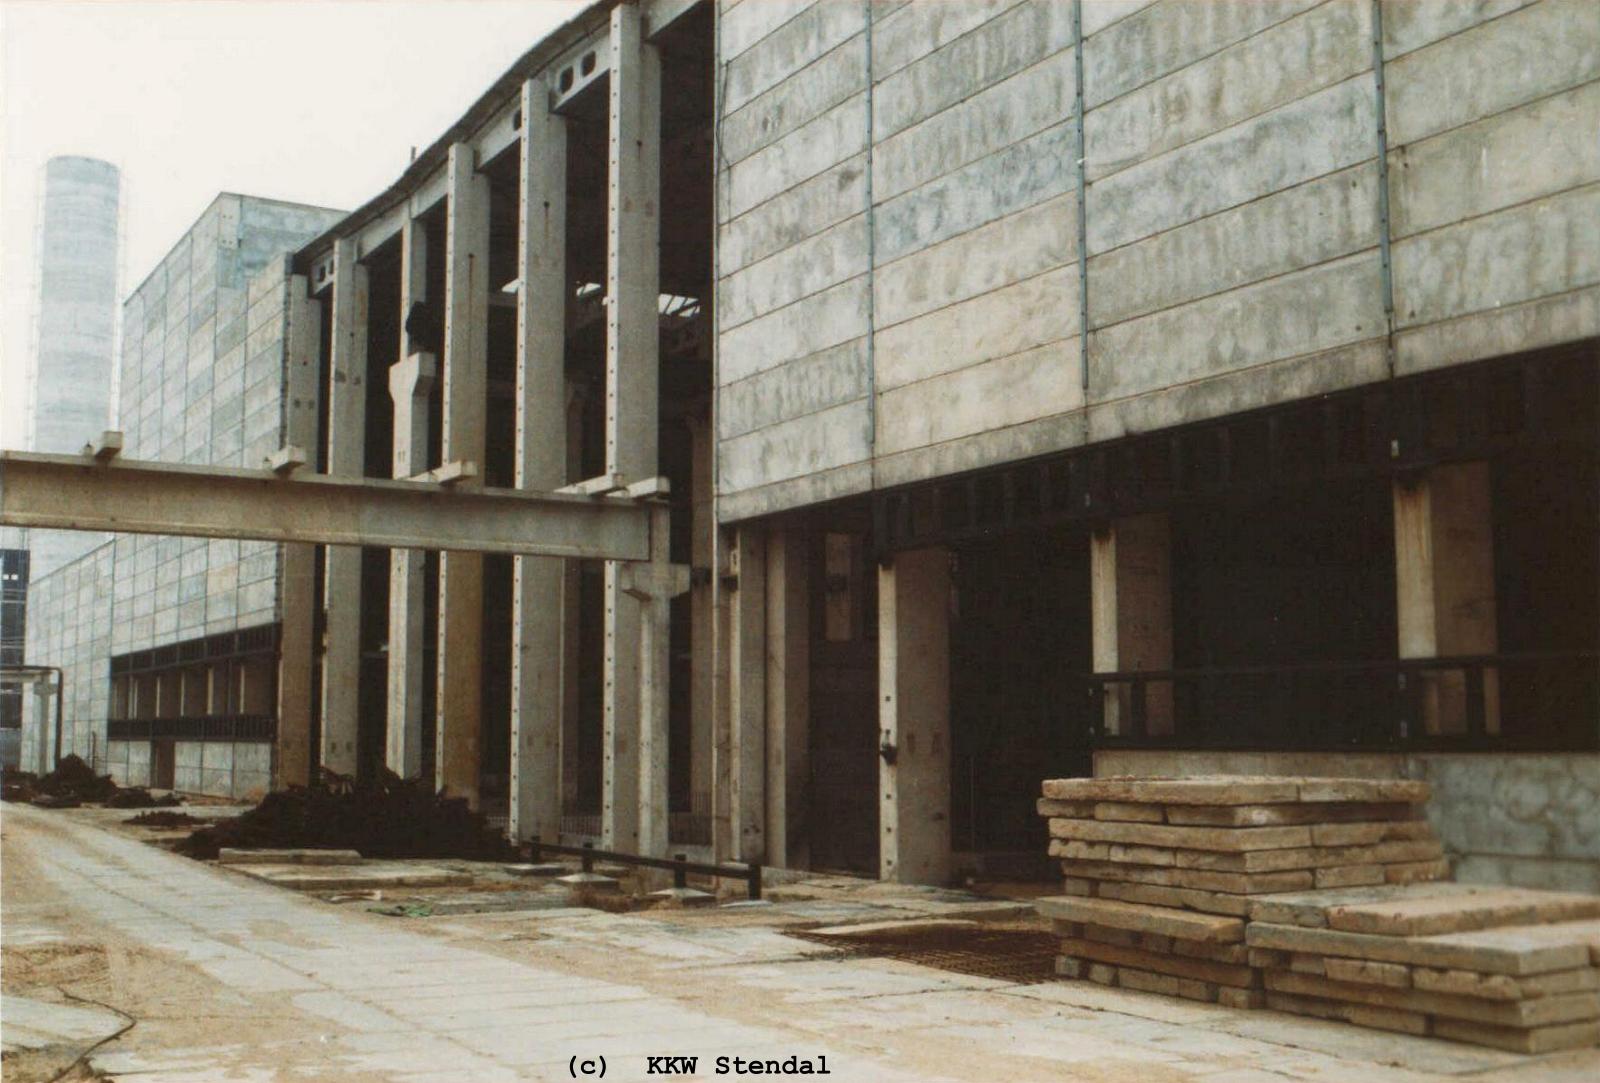  KKW Stendal, Baustelle 1990, ZAW Zentrale Aktive Werkstatt, Südfront 